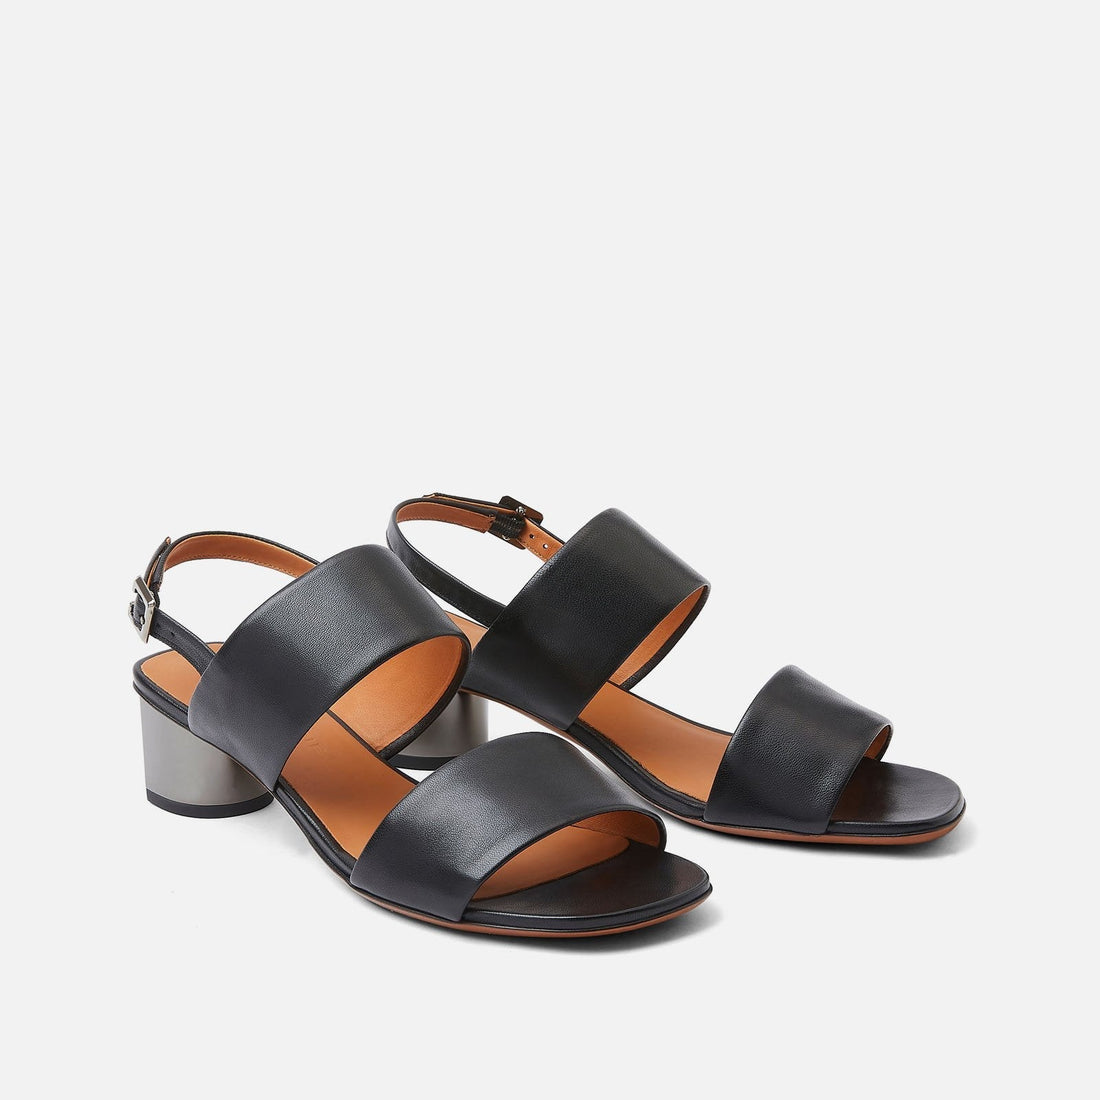 SANDALS - LEONIE sandals, black || OUTLET - LEONIEBLKNAPM350 - Clergerie Paris - USA